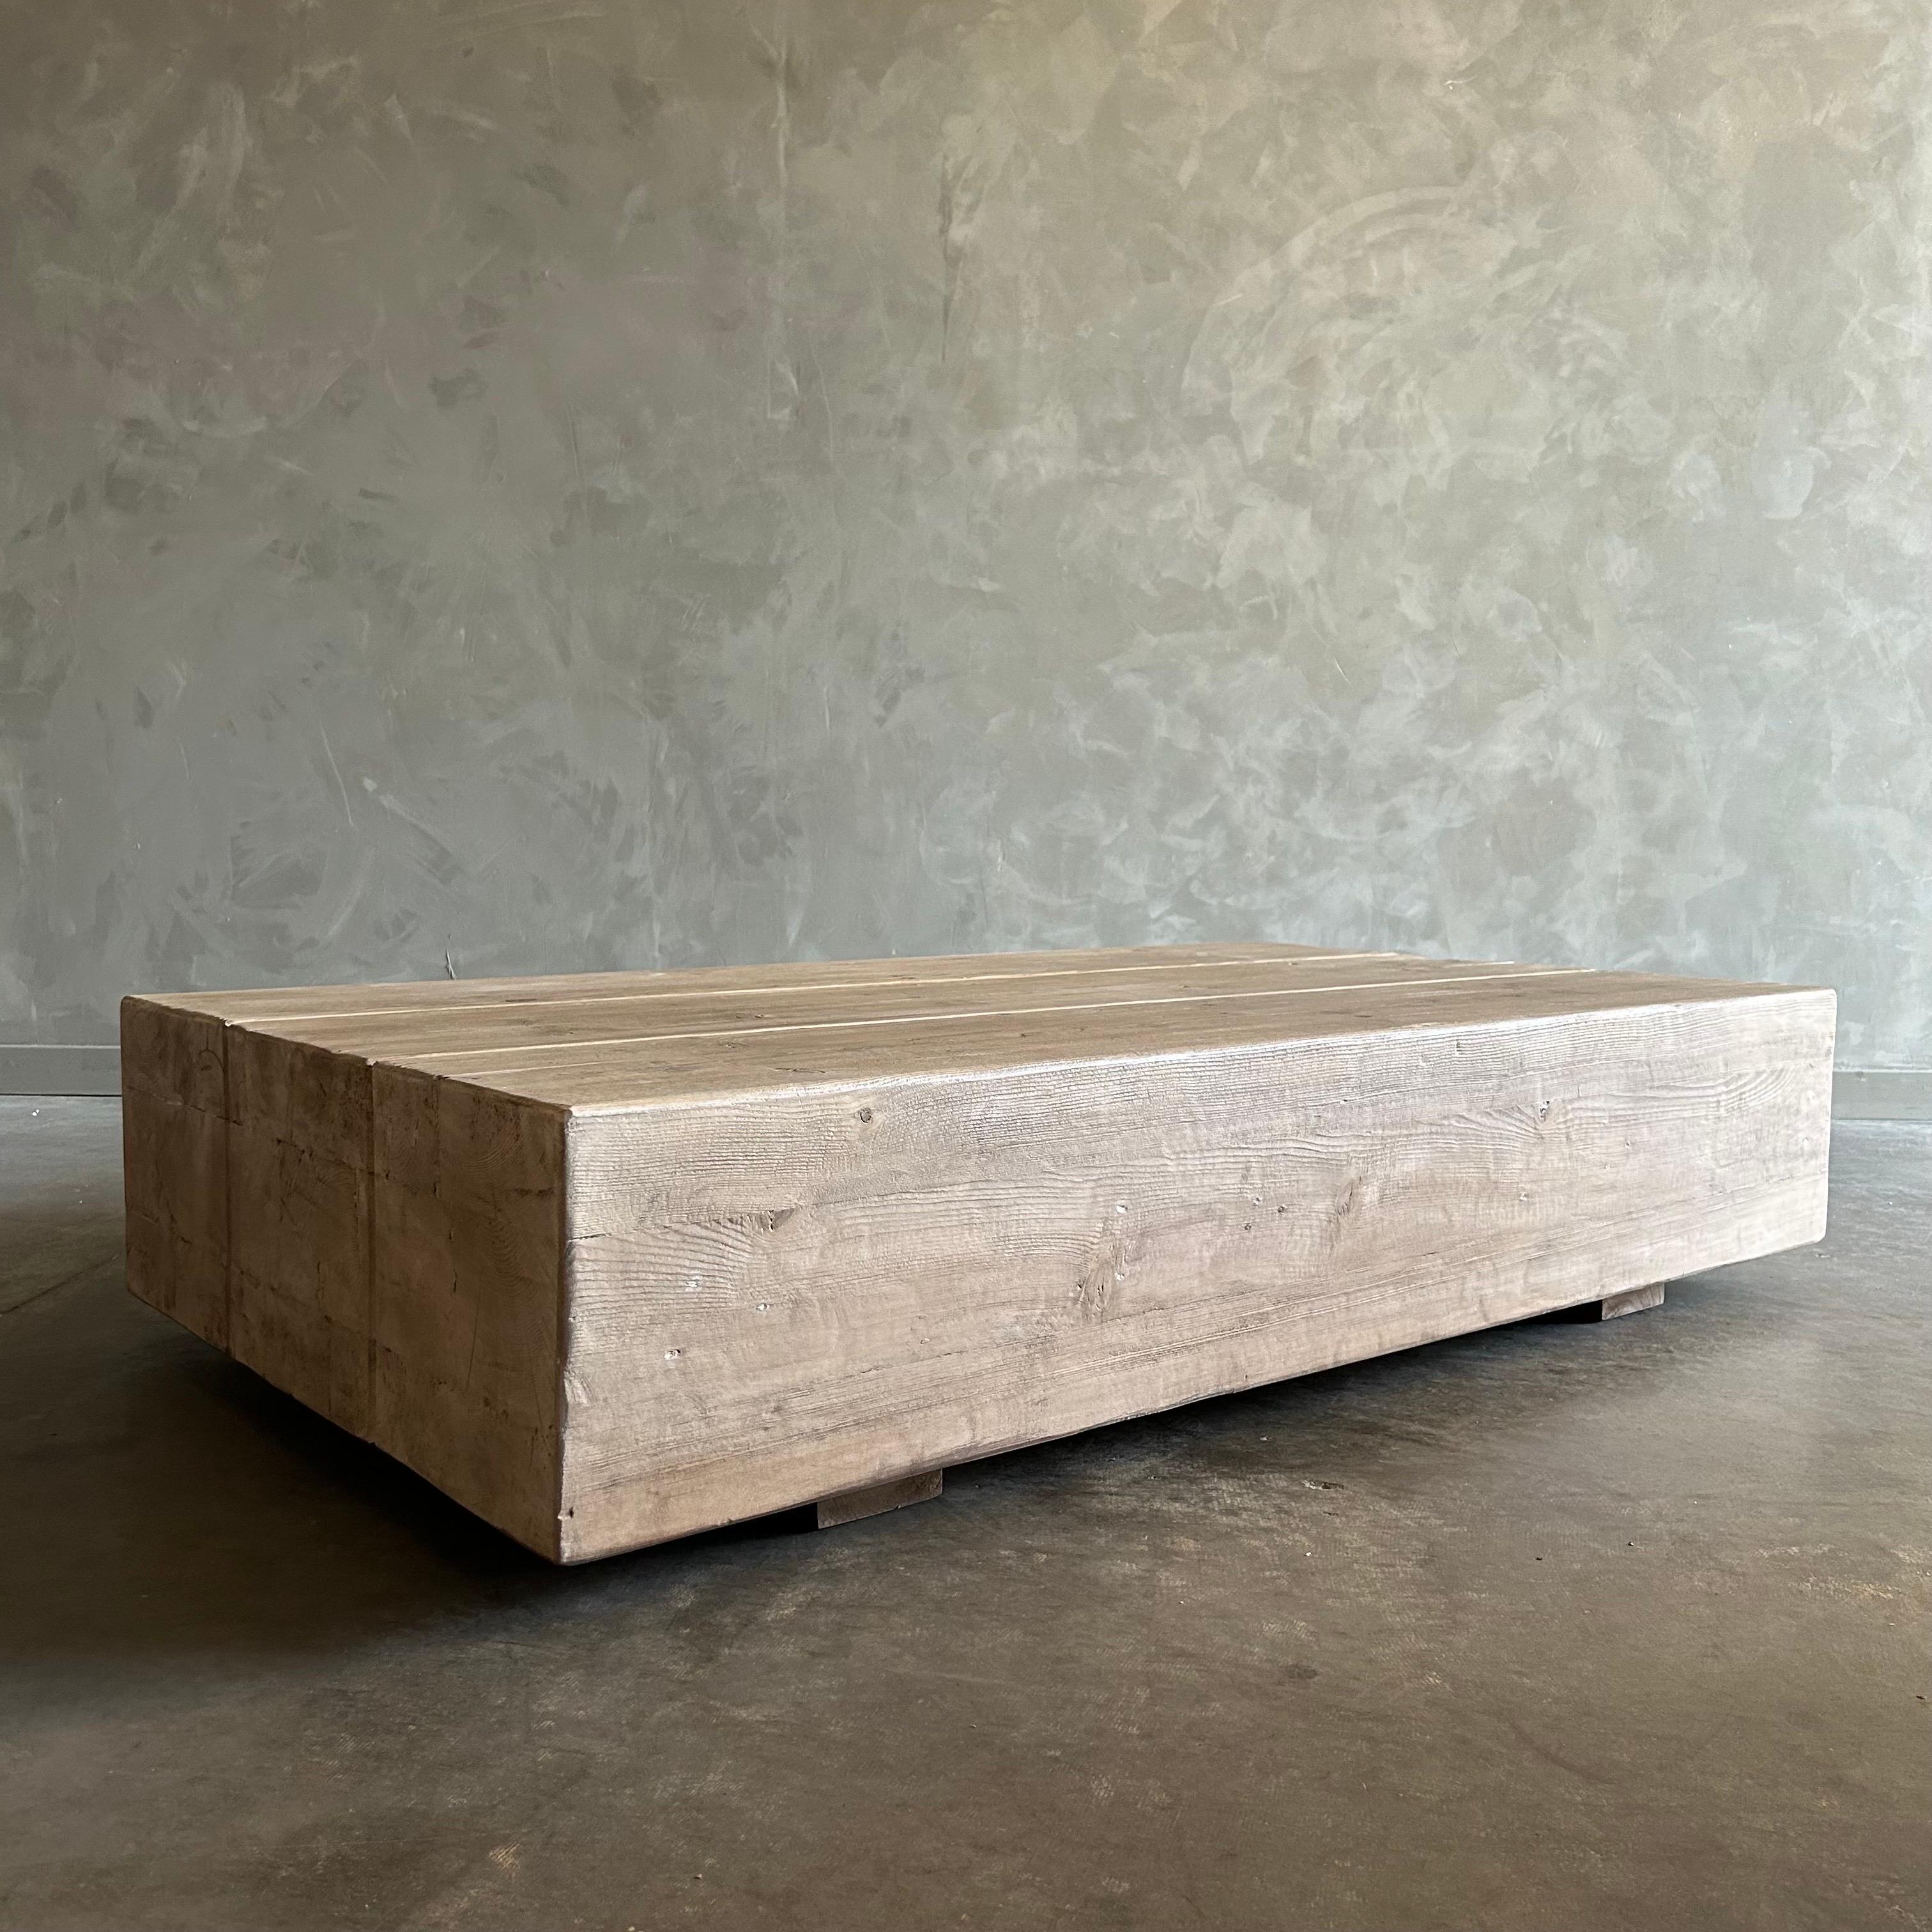 COLLECTION SH
Table basse en bois d'orme unique en son genre
Cette table est le rêve d'un minimaliste moderne, c'est une pièce élégante qui grandira avec vous au fil du temps. Fabriquée en planches de bois d'orme, la finition de la table met en